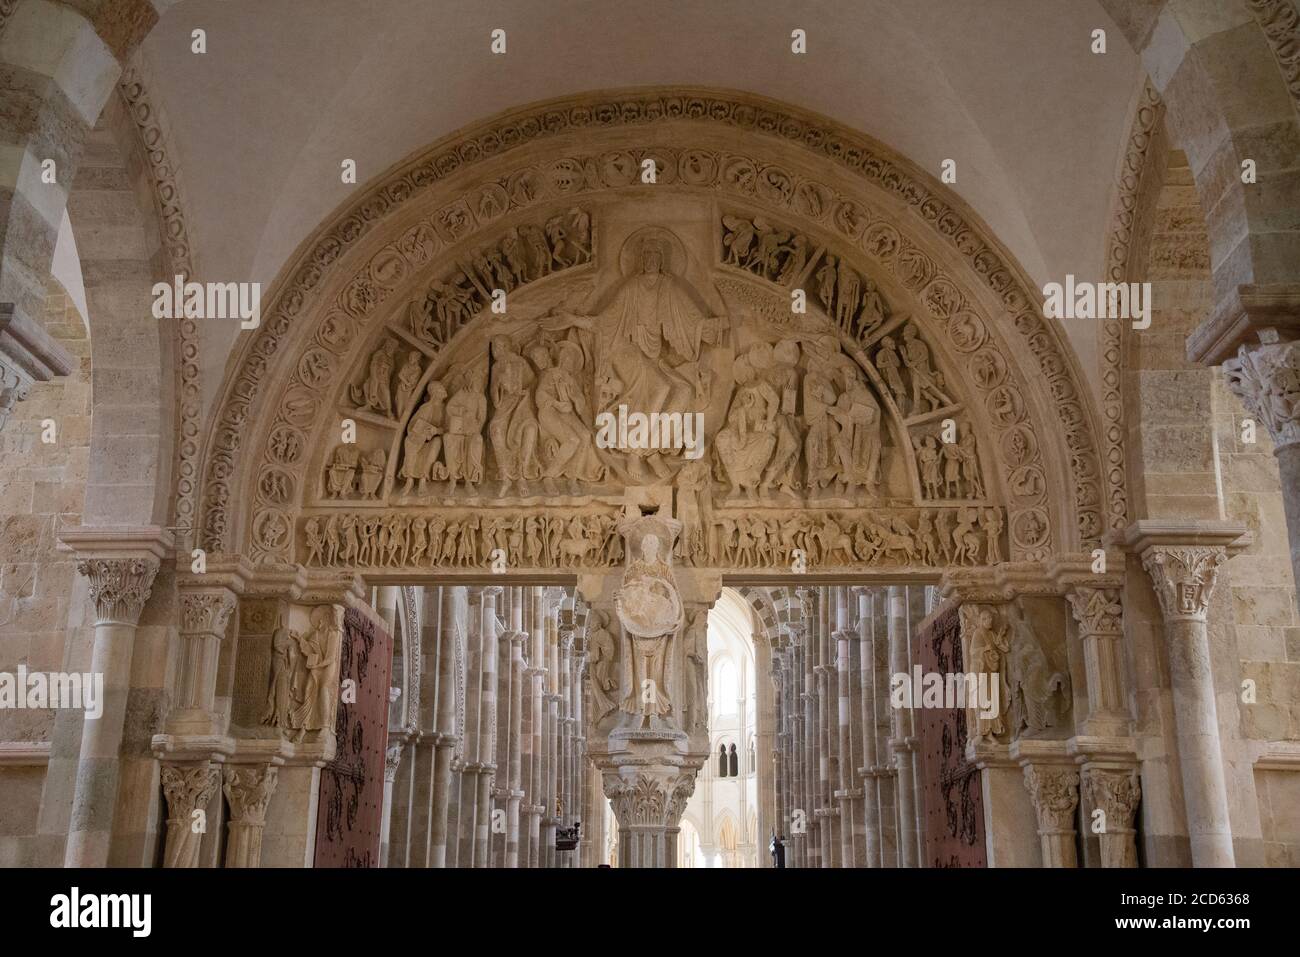 Details von Ornamenten in der Basilika St. Marie Madeleine von Vezelay in Frankreich Stockfoto